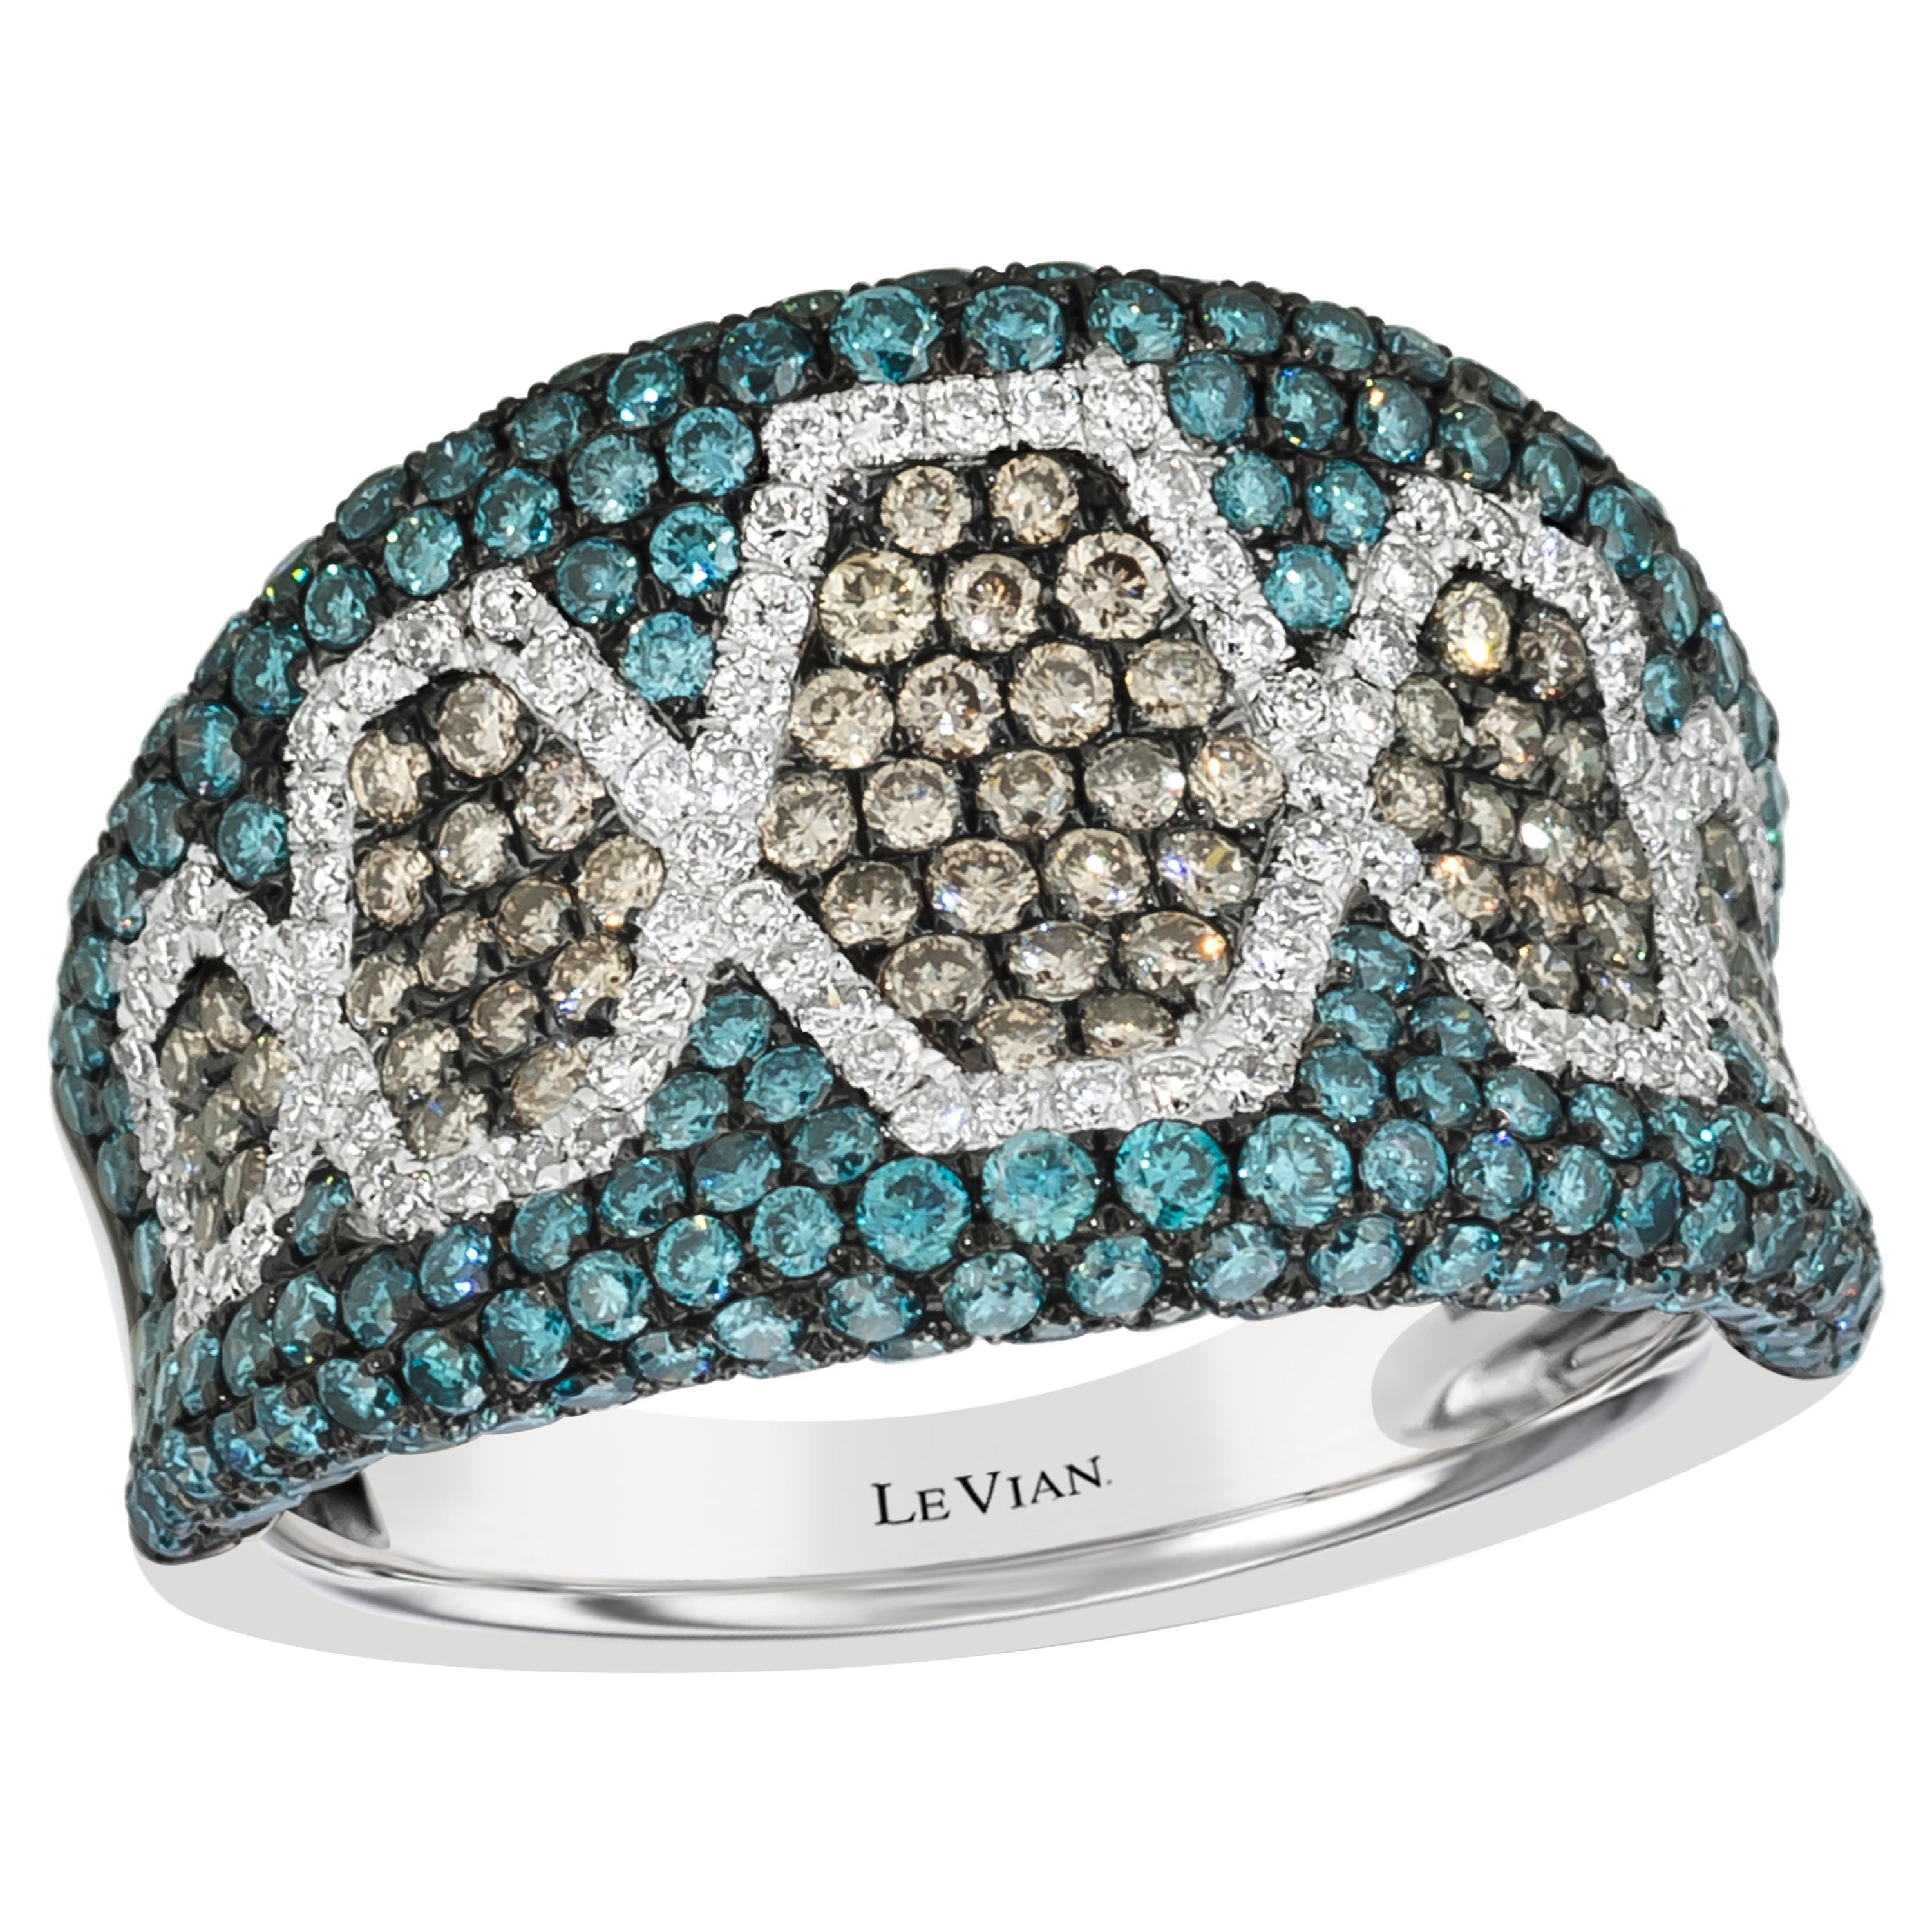 LeVian Ring Schokoladen-, Blau- und Weißdiamanten in 14K Weißgold gefasst